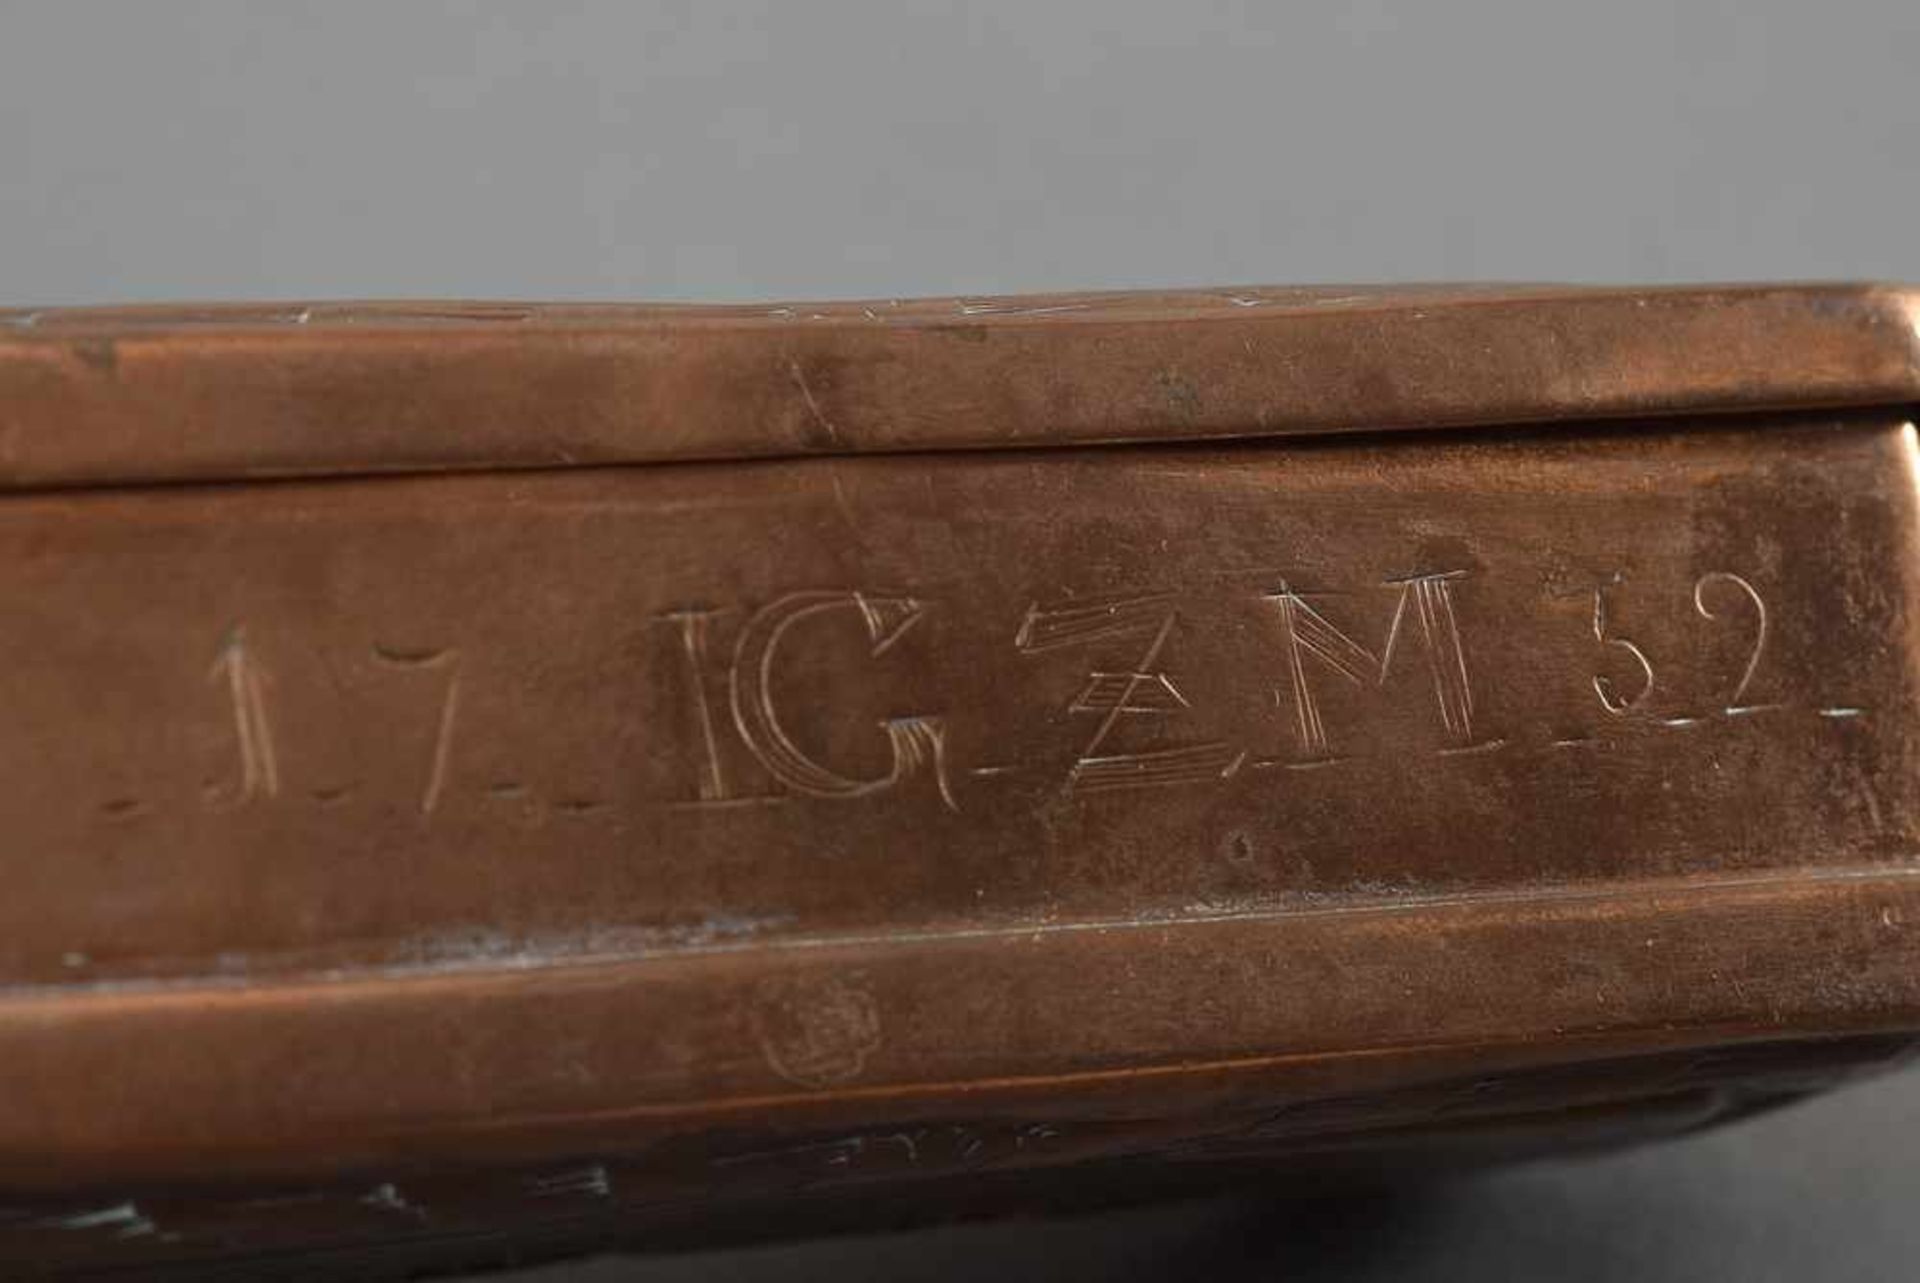 Oktogonale Kupfer Schnupftabakdose mit floraler Gravur "IGZM 1732", 3,5x12,5x6cm, Druckstellen, - Bild 5 aus 5